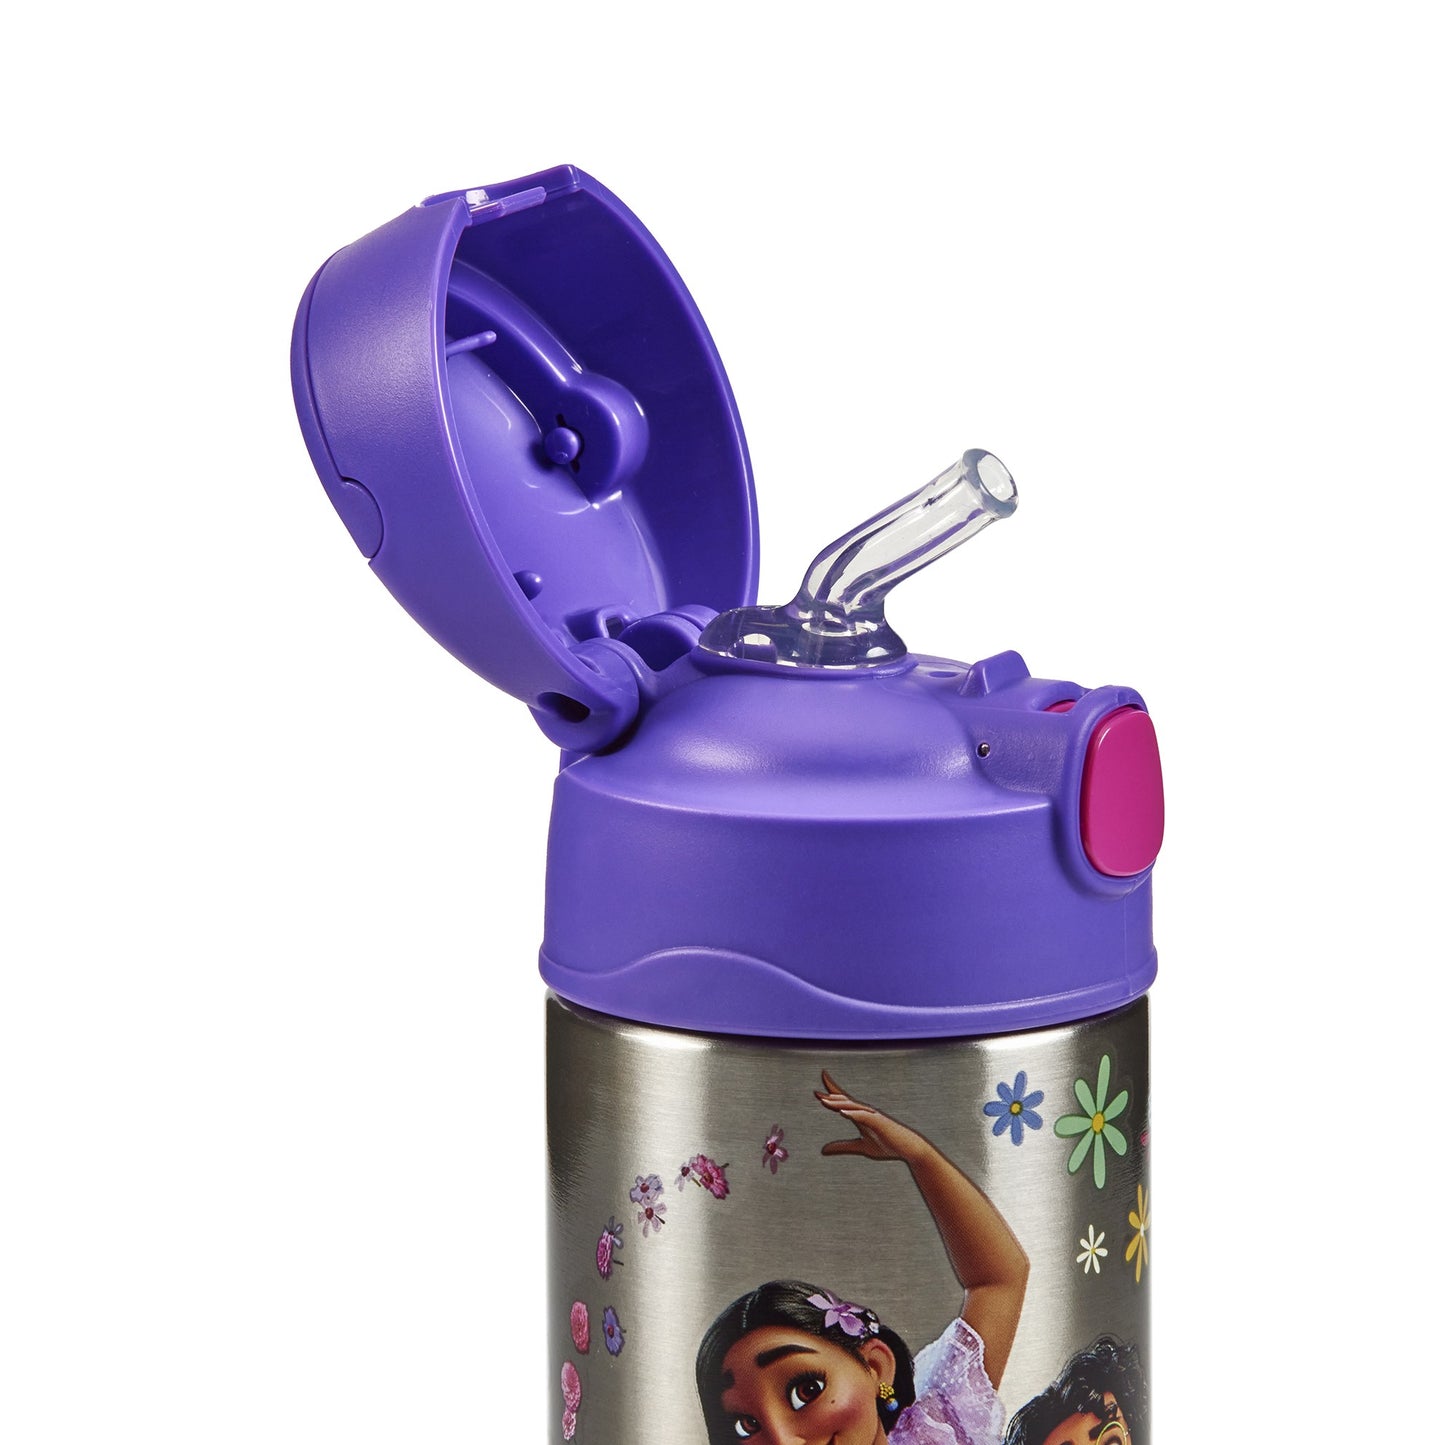 Disney Encanto Funtainer Bottle 335ml